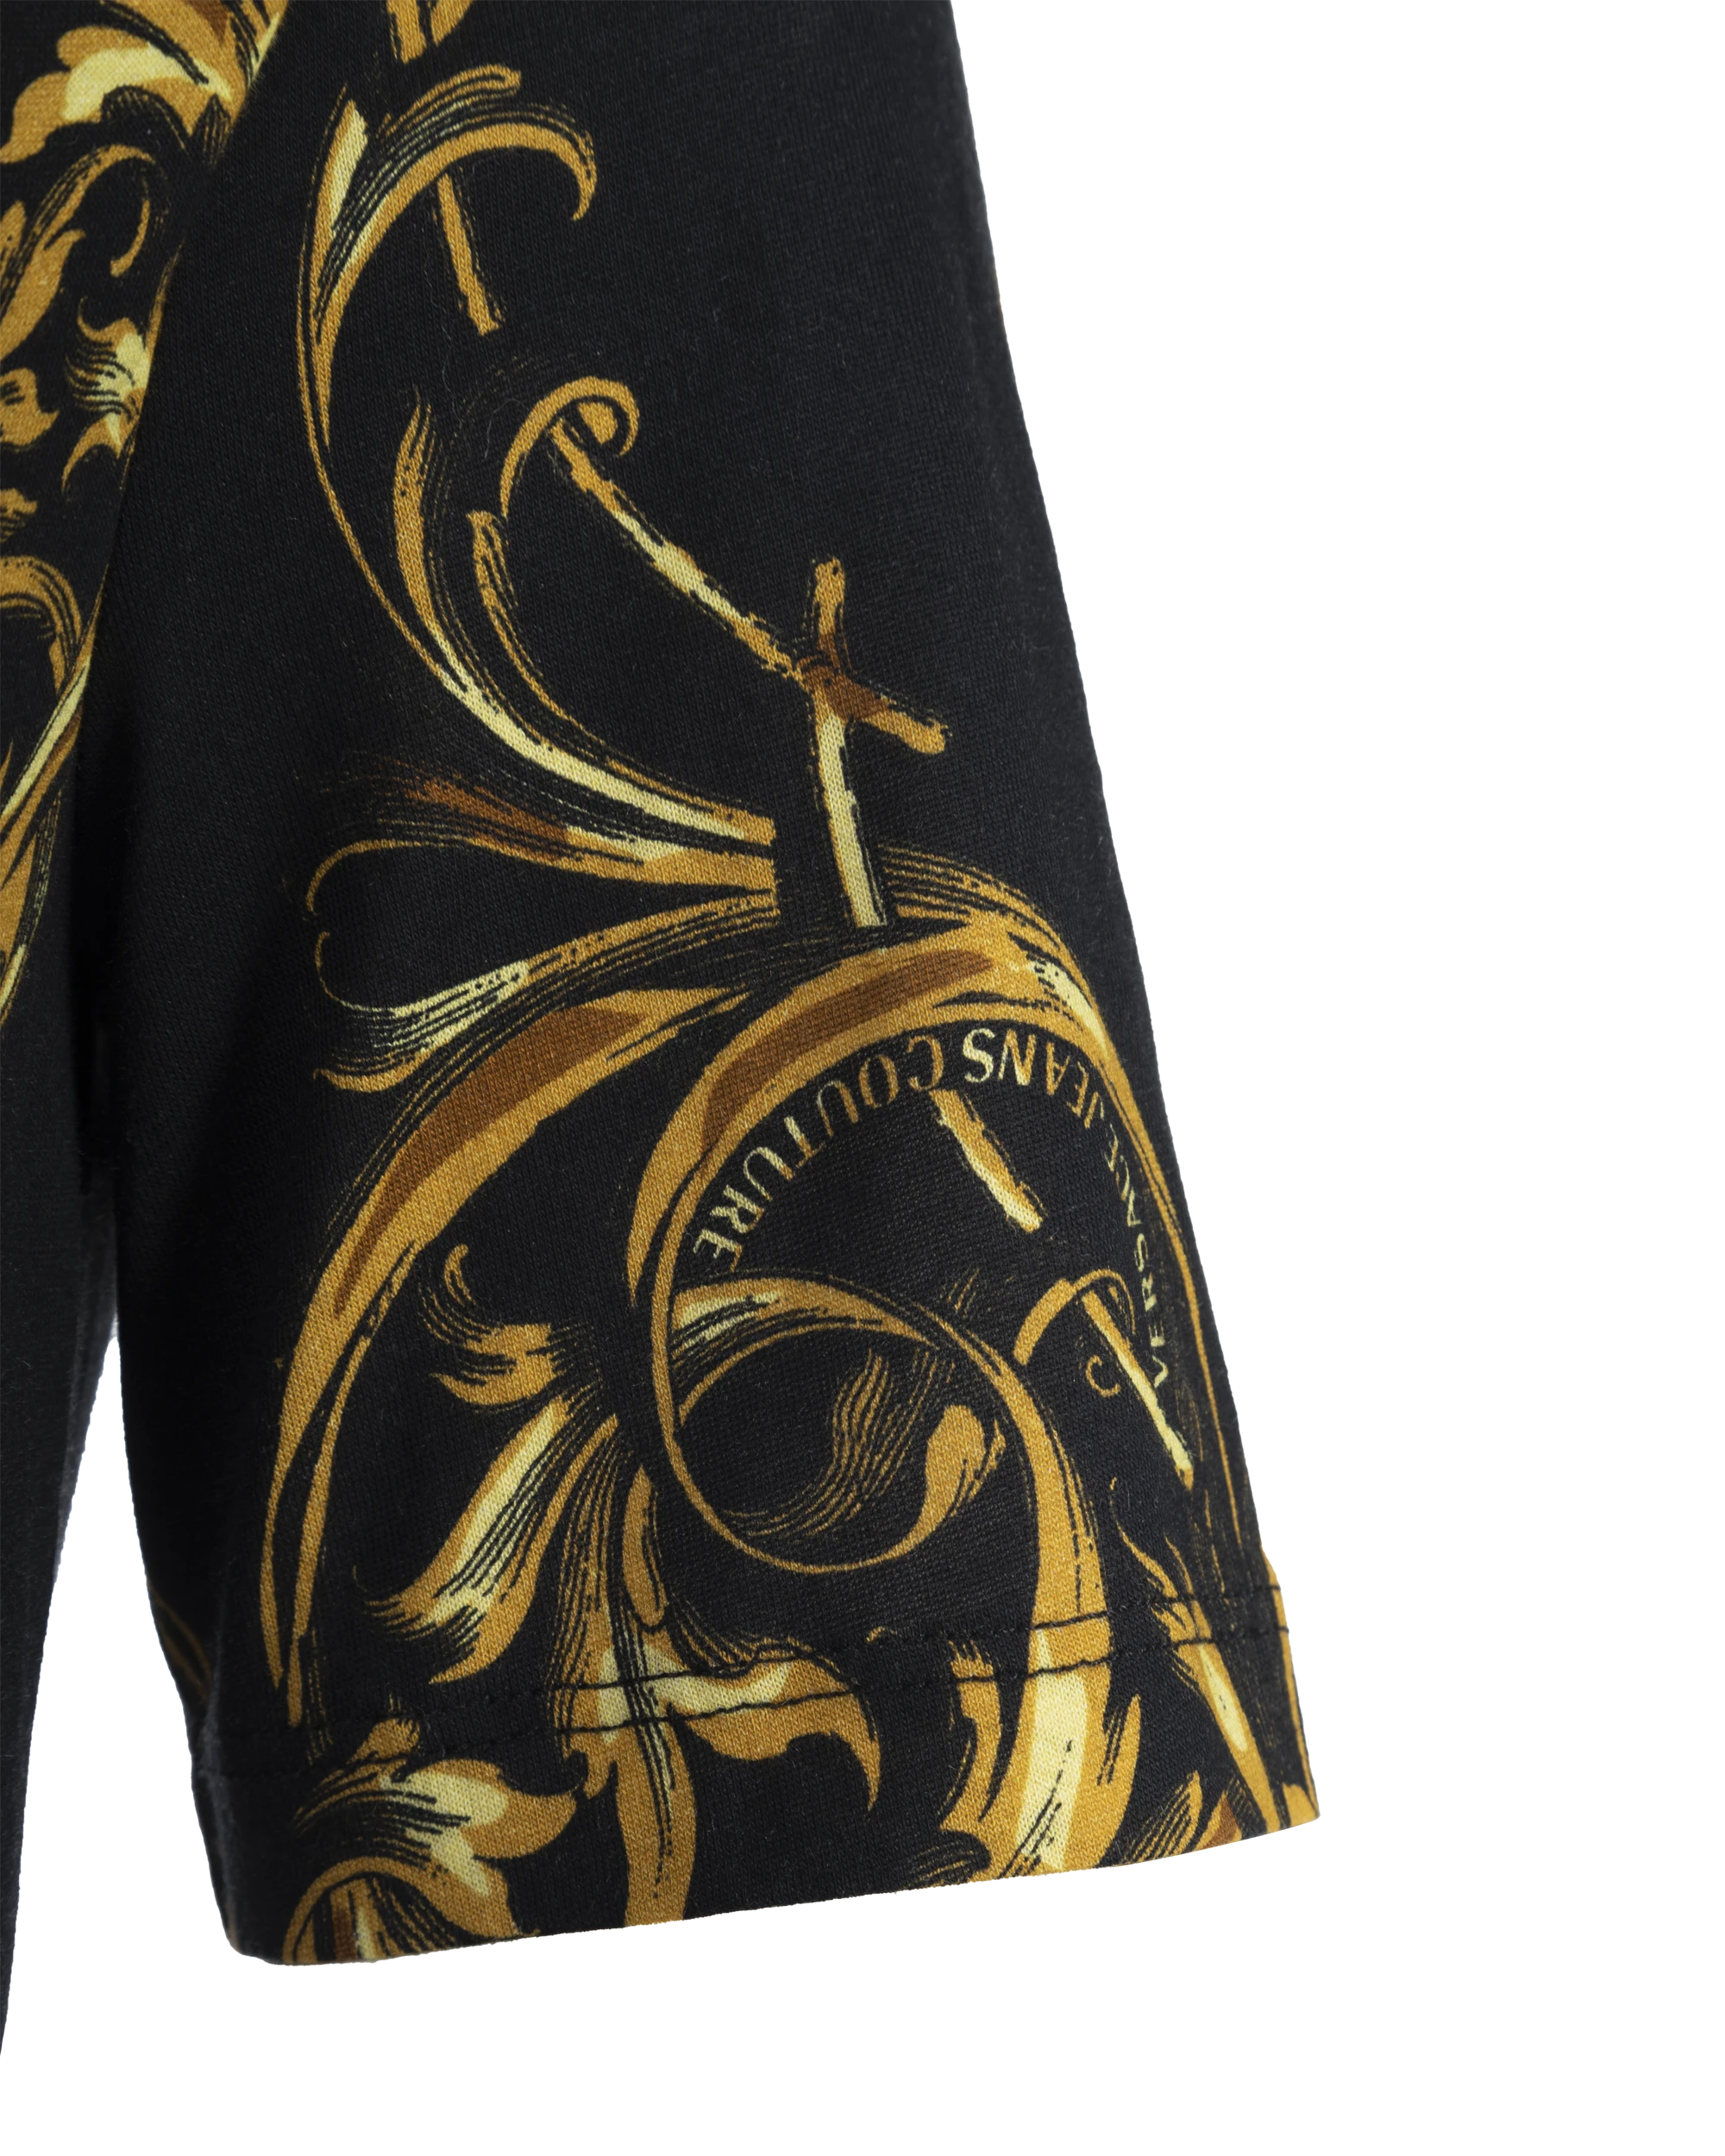 Regalia Baroque Printed Bodysuit